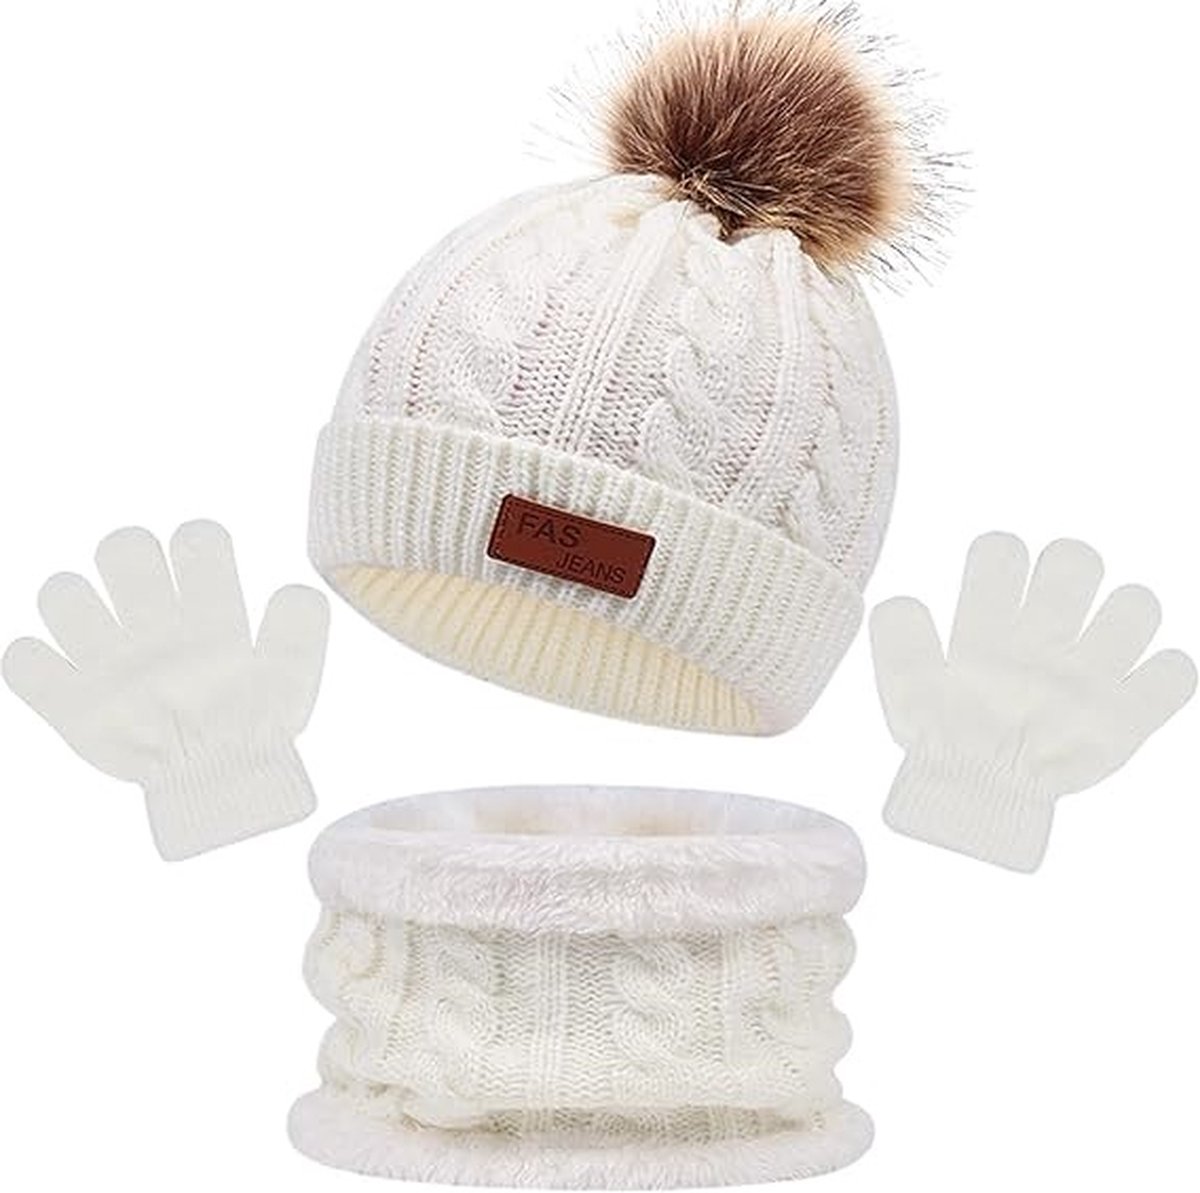 Winter set 3 stuks - Wit - 1 tot 5 jaar - Beanie muts, ronde sjaal, handschoenen - 3-delige set voor kinderen